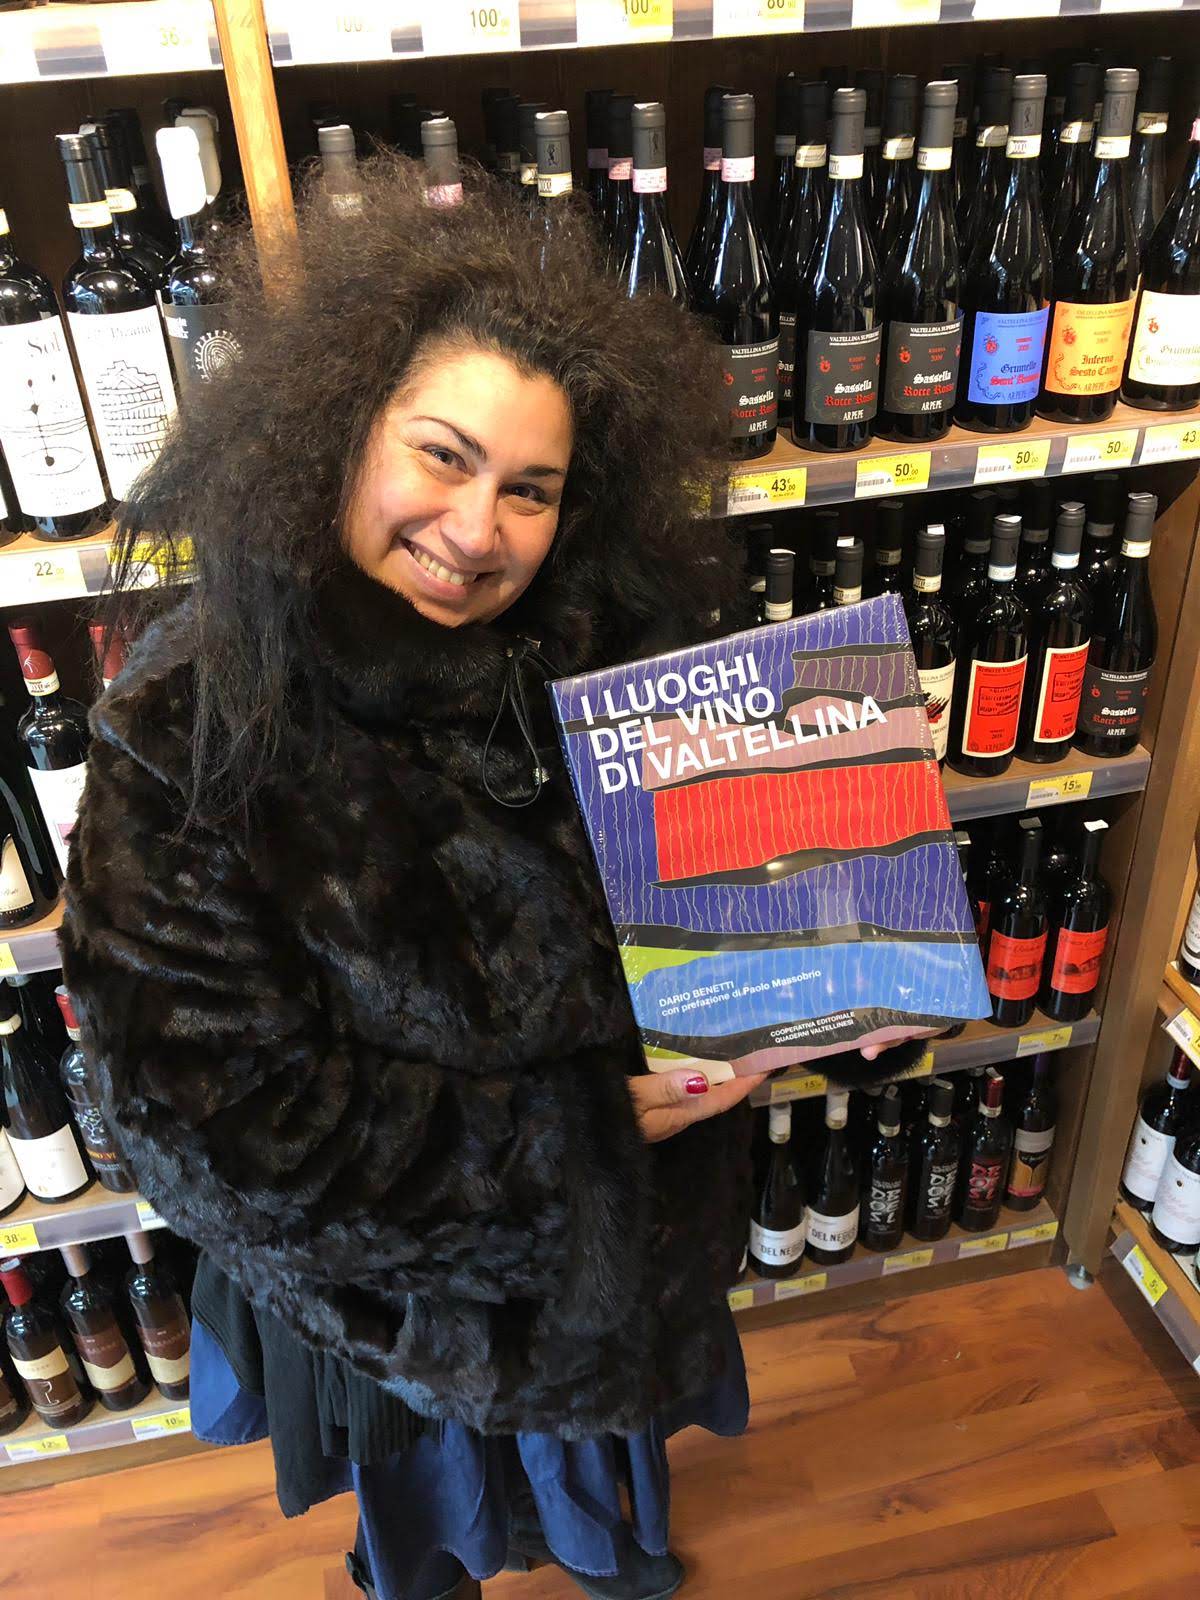 Il libro scritto da alcuni colleghi sommelier e giornalisti a cui ho partecipato come degustatore durante gli assaggi dei vini della Valtellina, in foto Carol Agostini